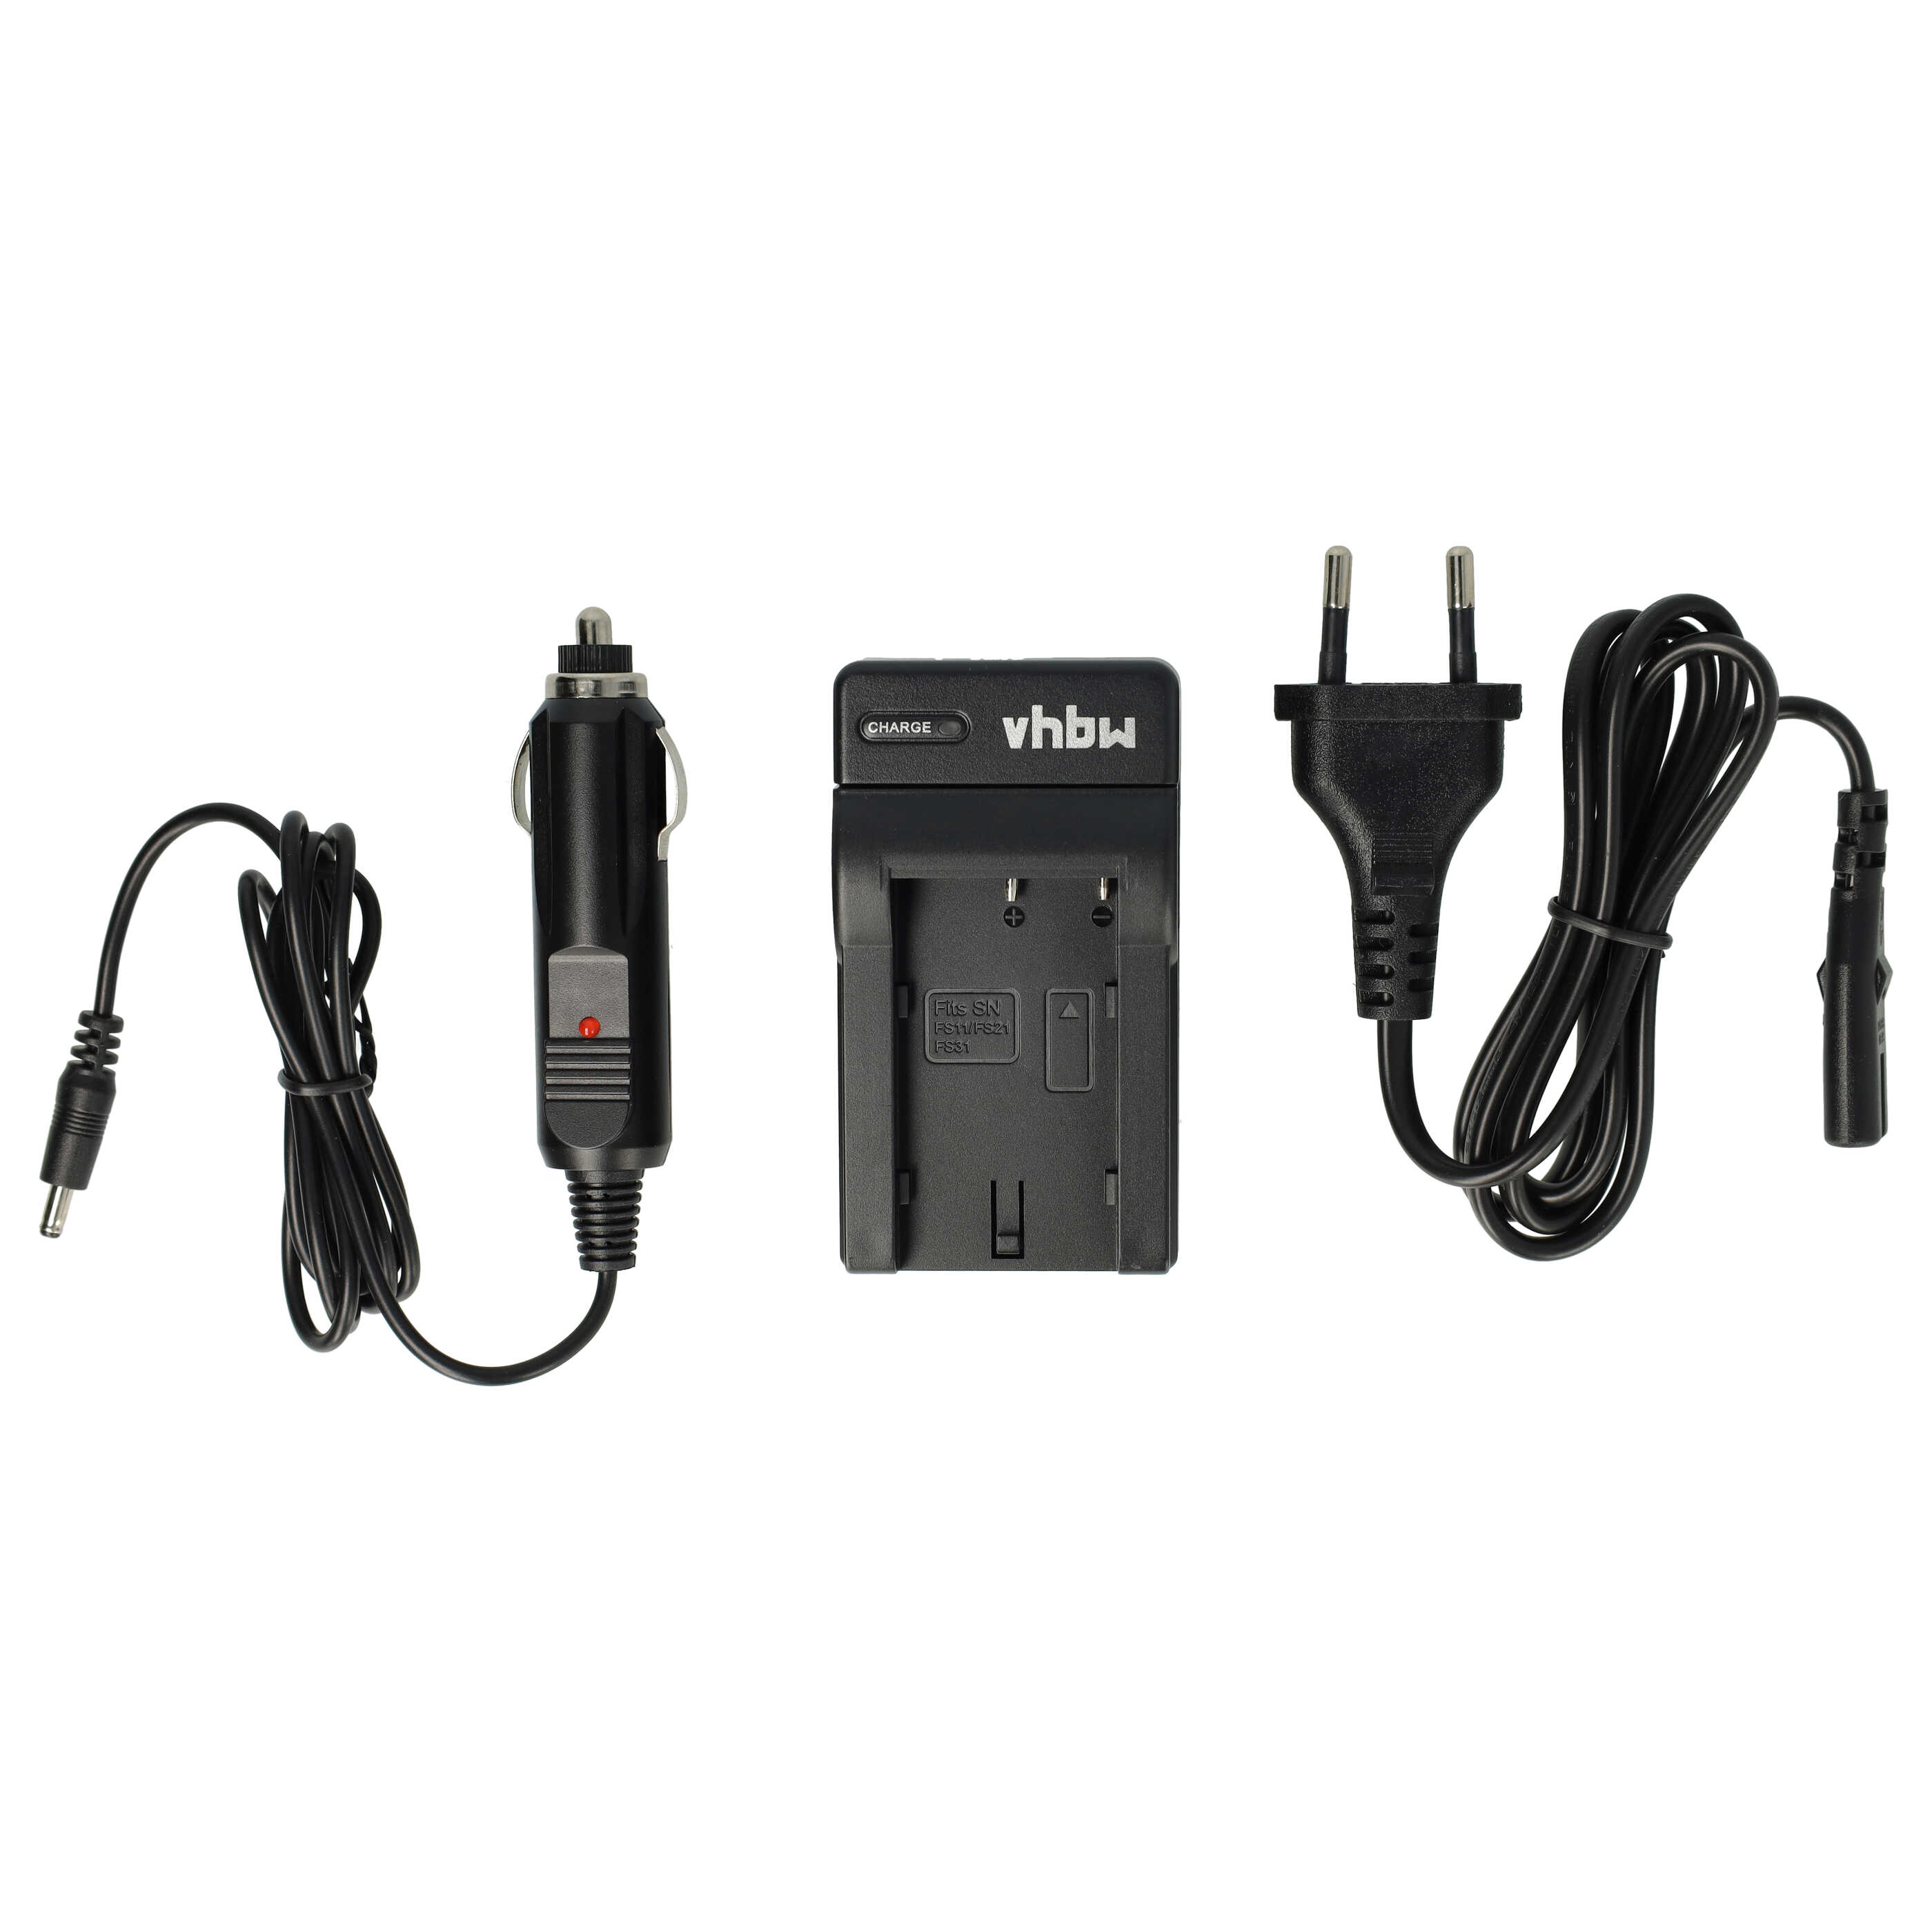 Akku Ladegerät passend für Sony NP-F10 Kamera u.a. - 0,6 A, 4,2 V